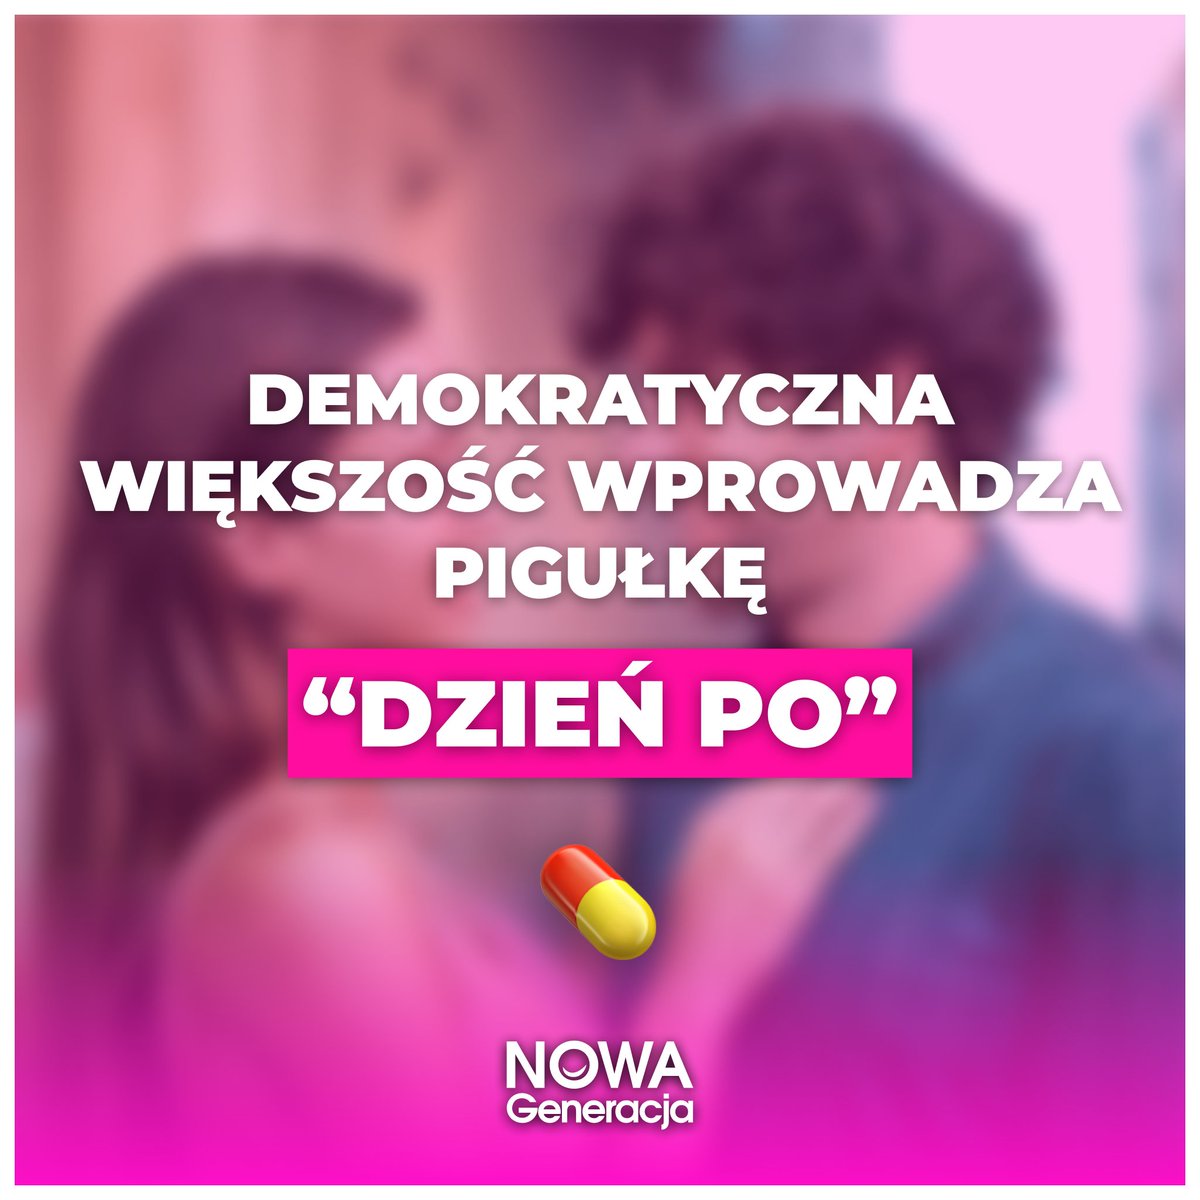 Koalicja rządząca przywraca Polsce europejskie standardy! Koniec ery kościelnego fundamentalizmu w Polsce jest faktem 🇪🇺🇵🇱 Teraz pigułka #DzieńPo będzie dostępna bez recepty, co pomoże młodym parom i polskim kobietom czuć się bezpieczniej ❤️💊